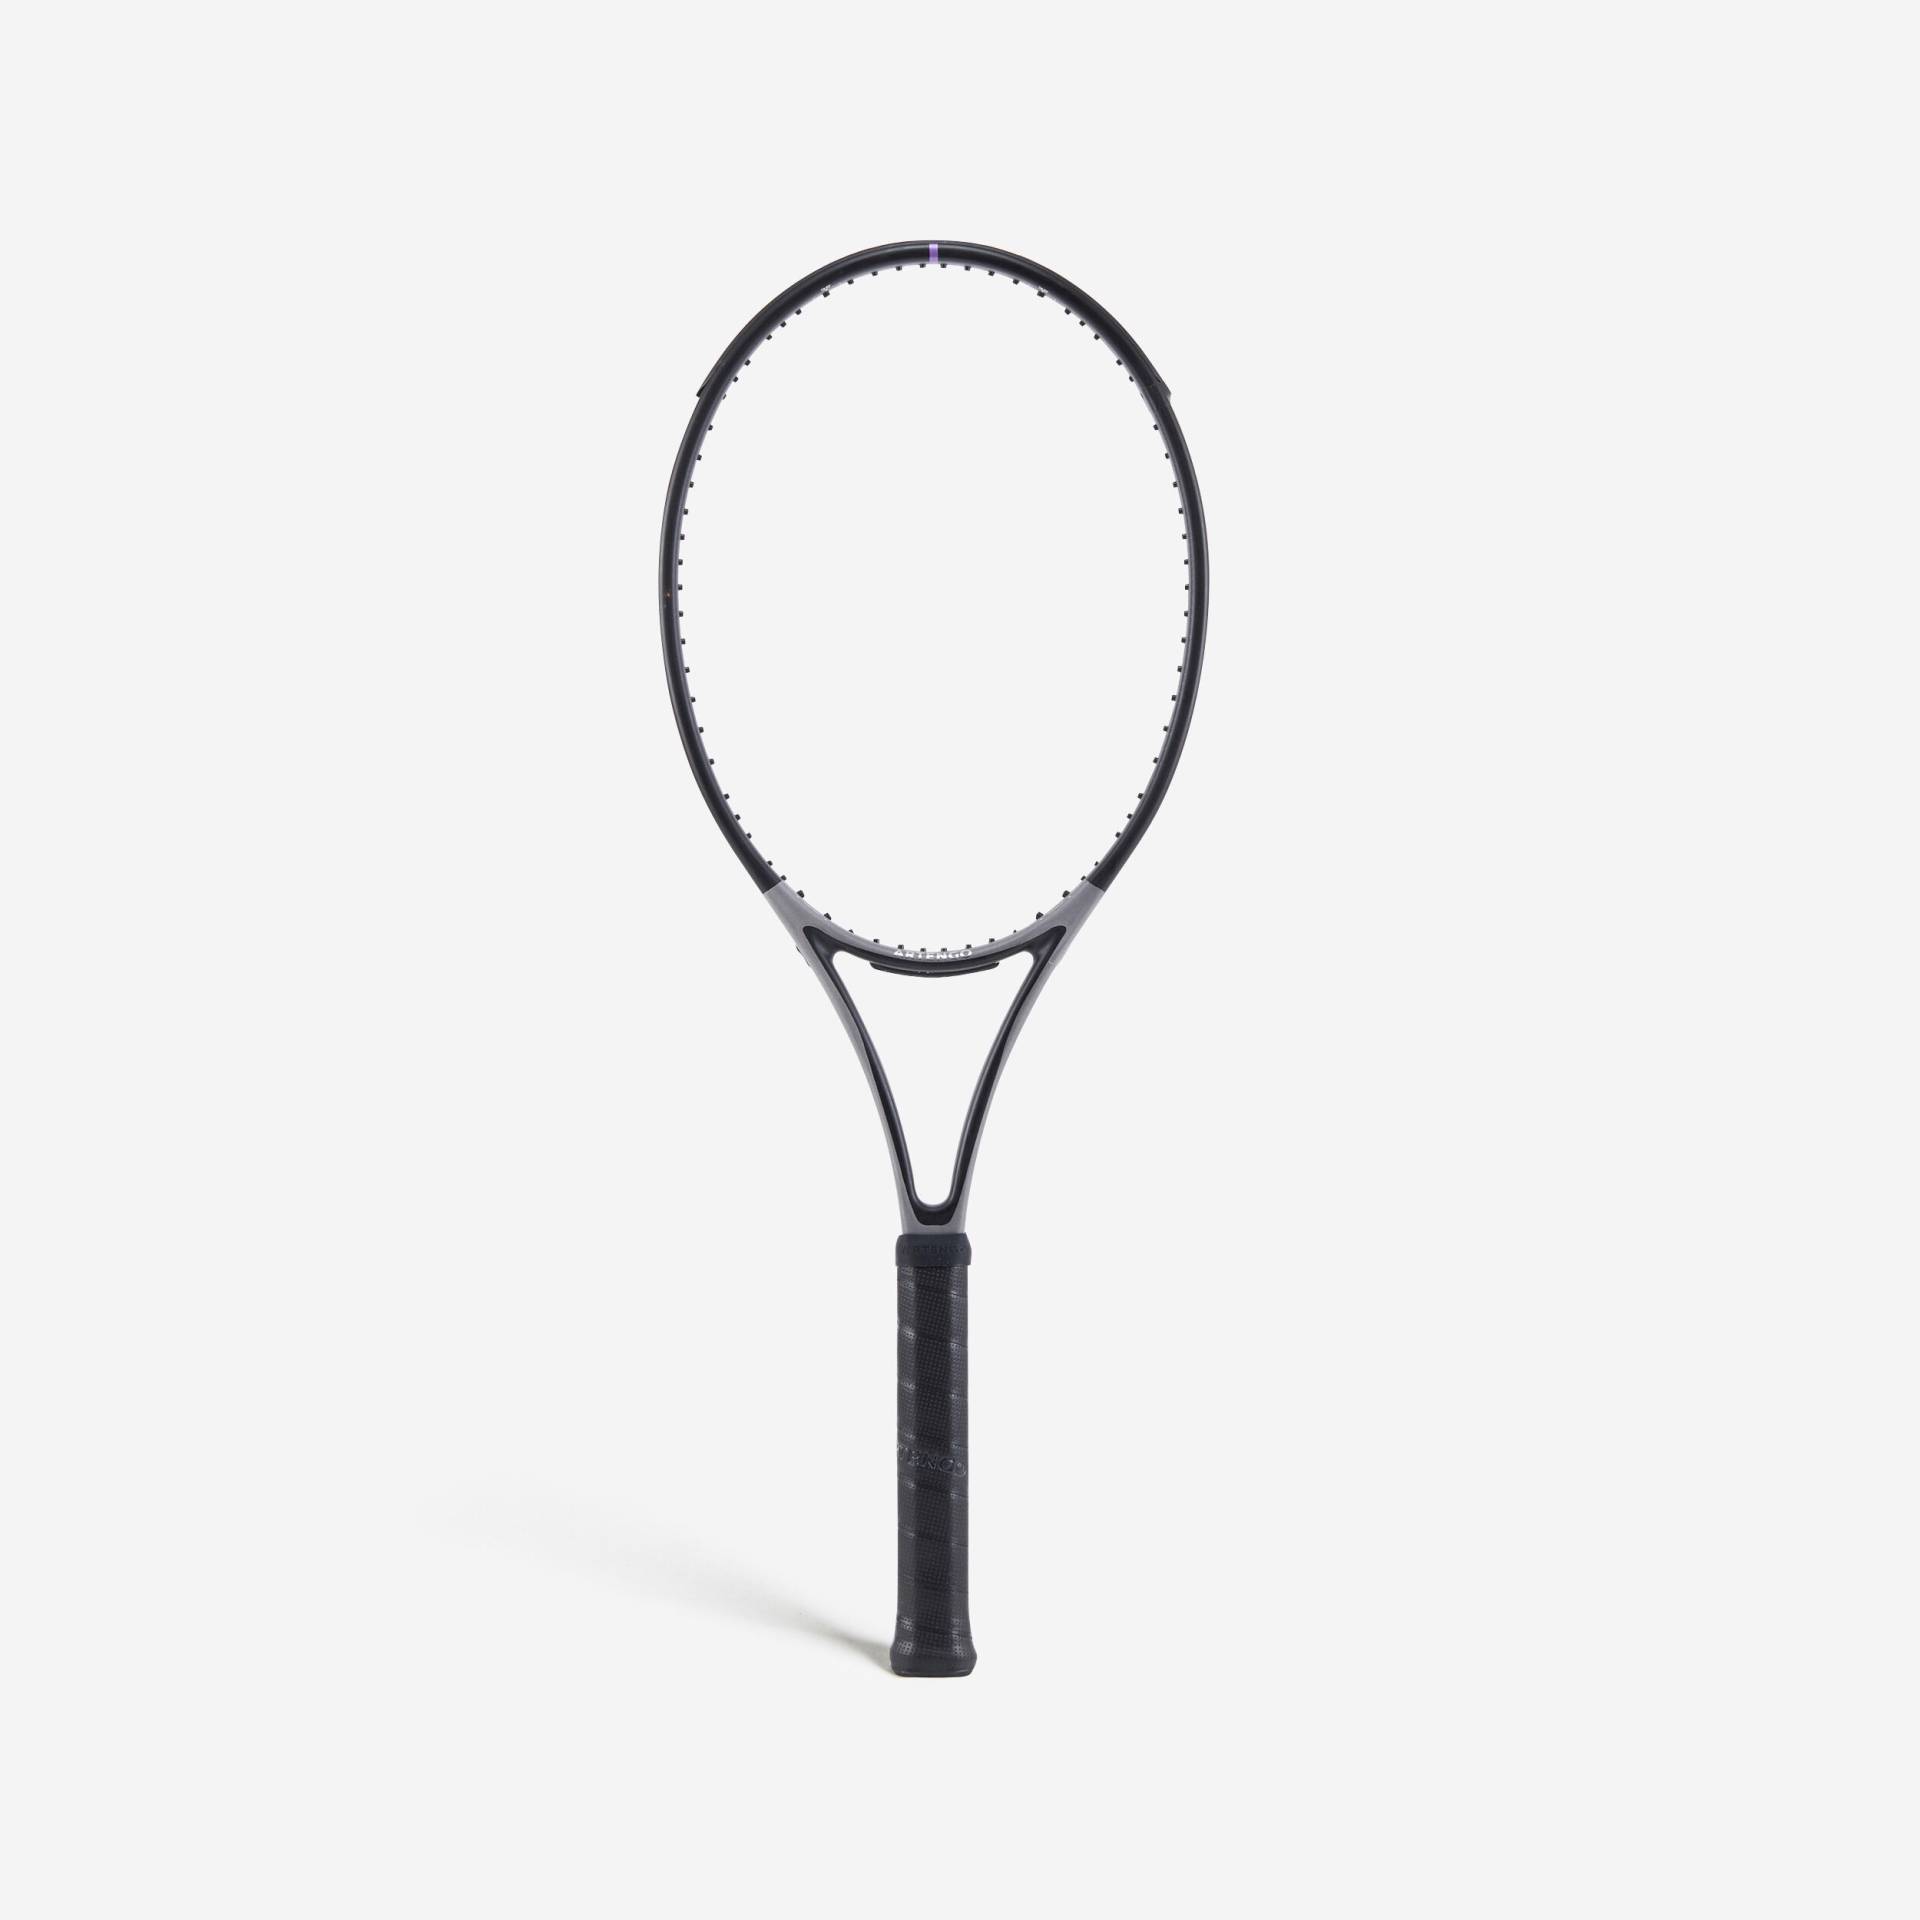 Artengo Tennisschläger Damen/Herren - TR960 Control Tour 305 g unbesaitet von ARTENGO